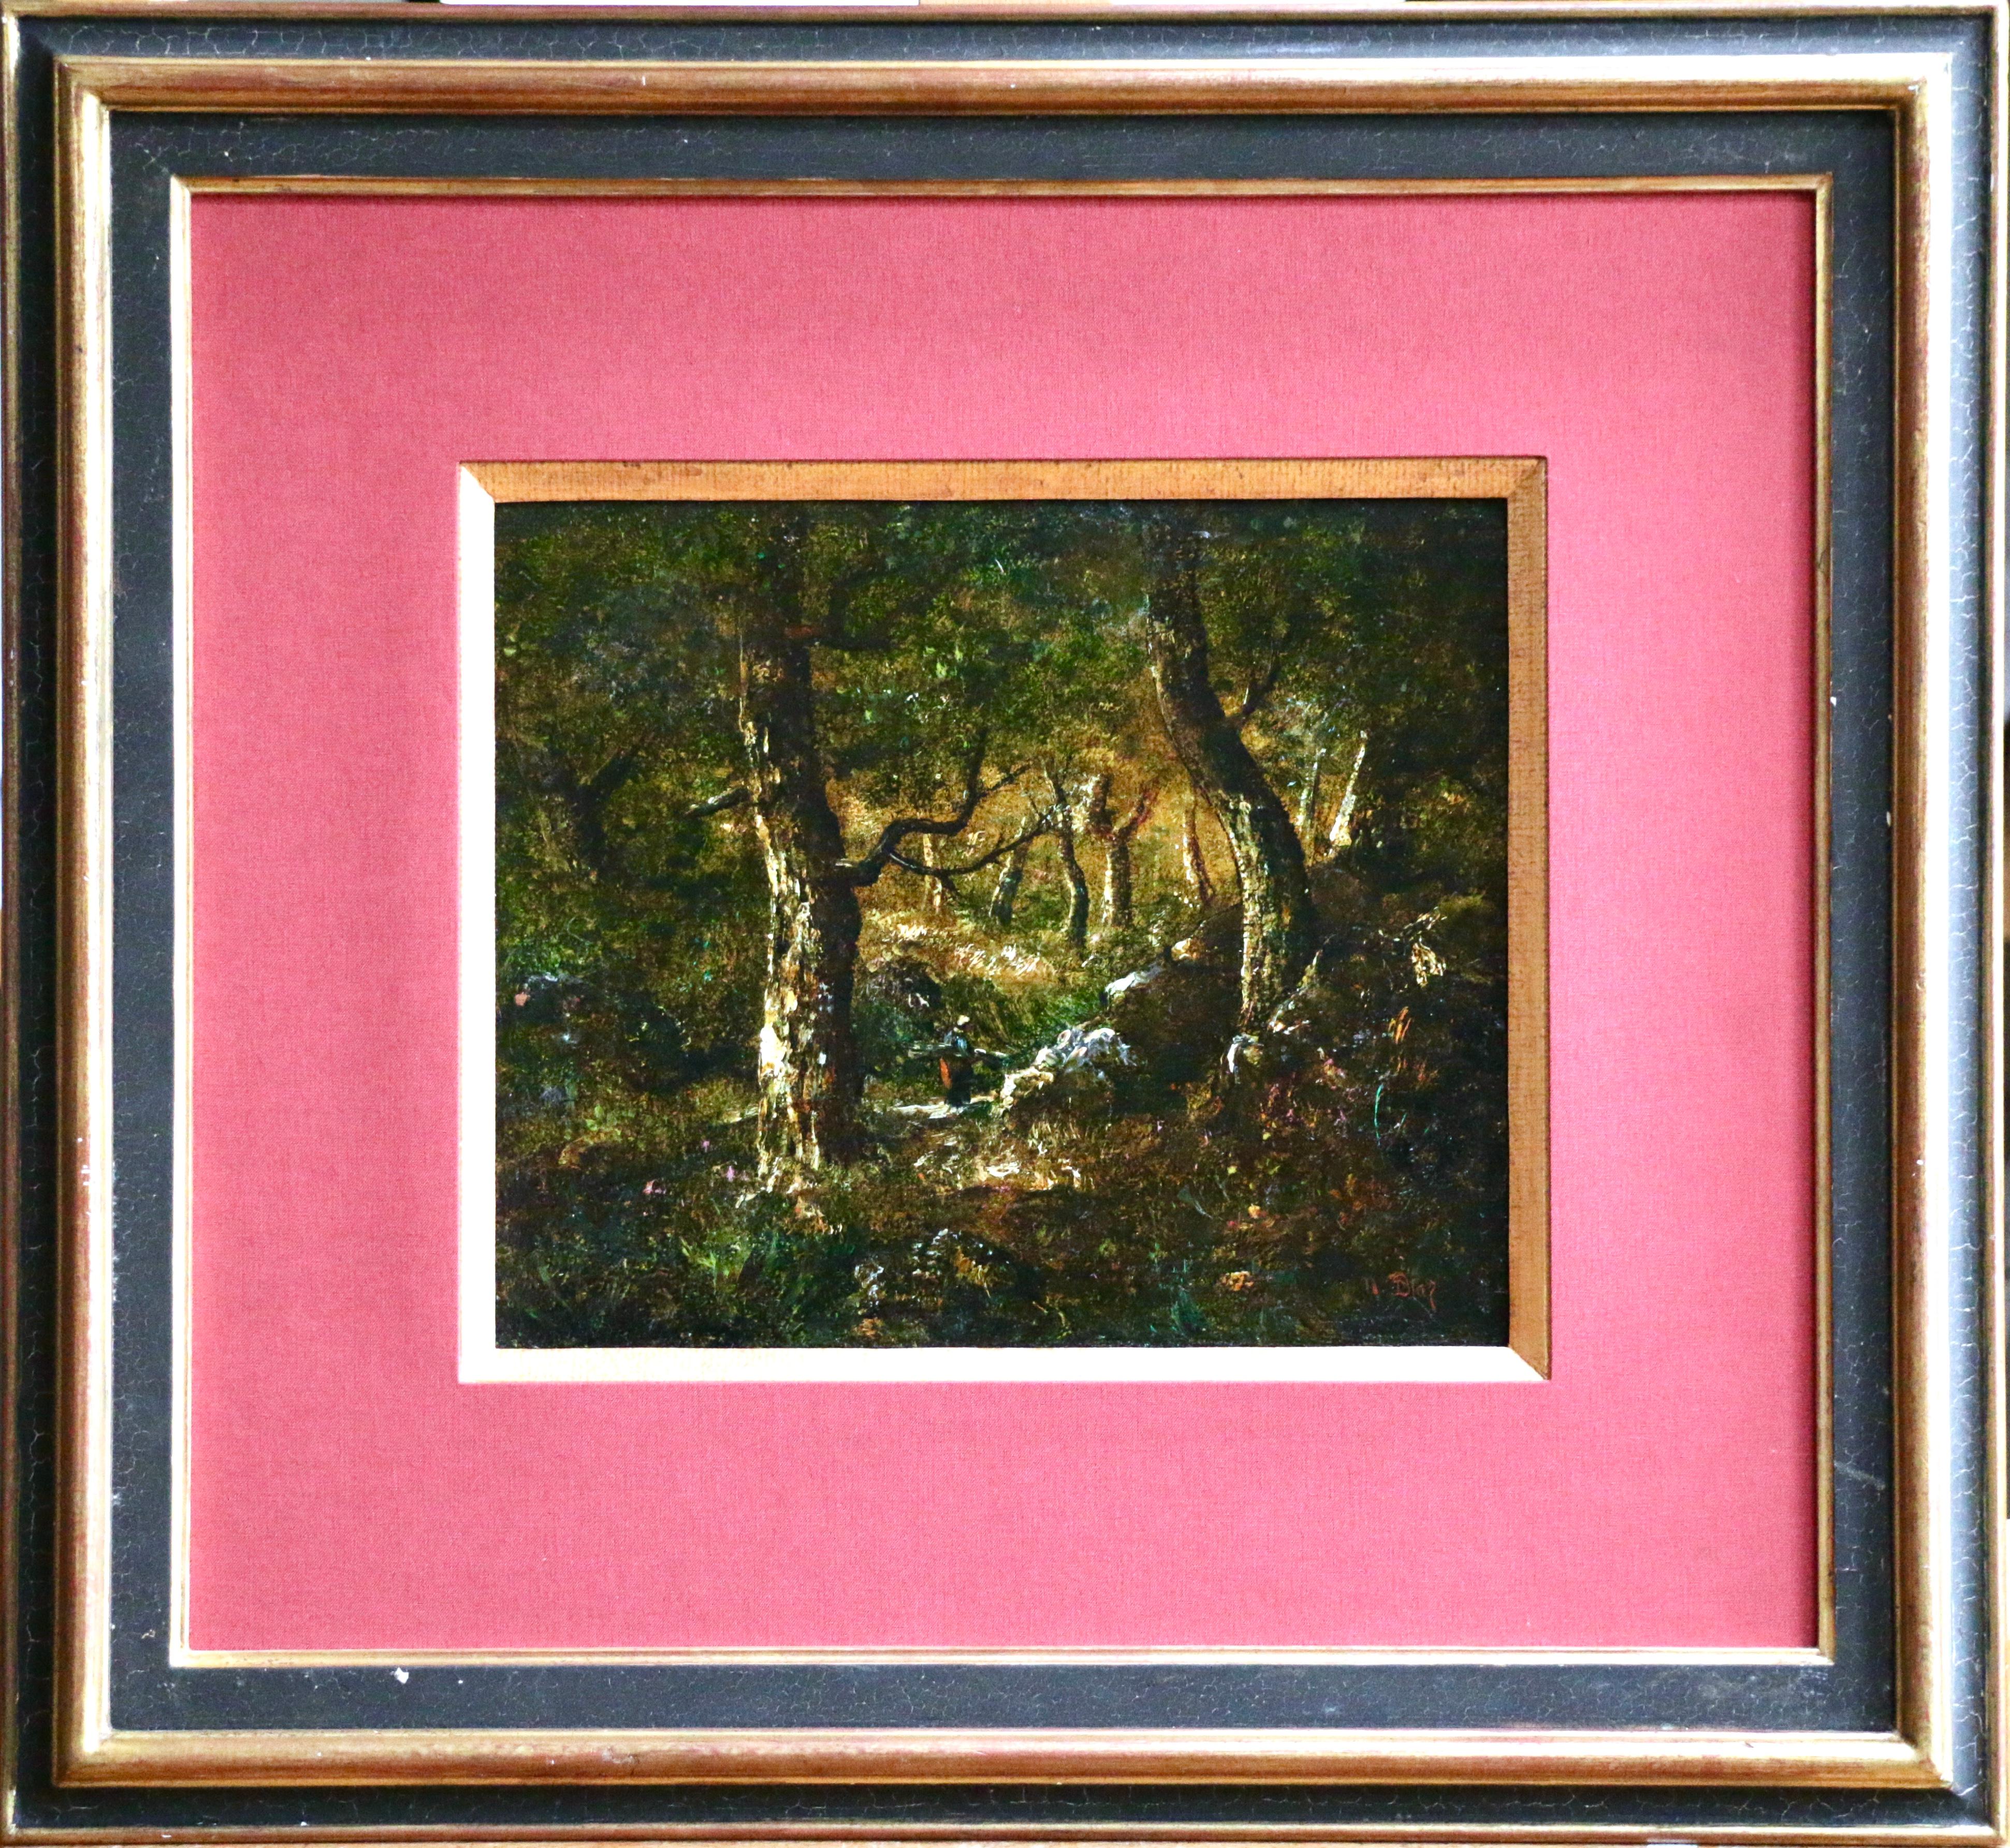 In the Forest - 19th Century Barbizon Oil Figure in Landscape by Diaz de la Pena - Painting by Narcisse Virgilio Díaz de la Peña